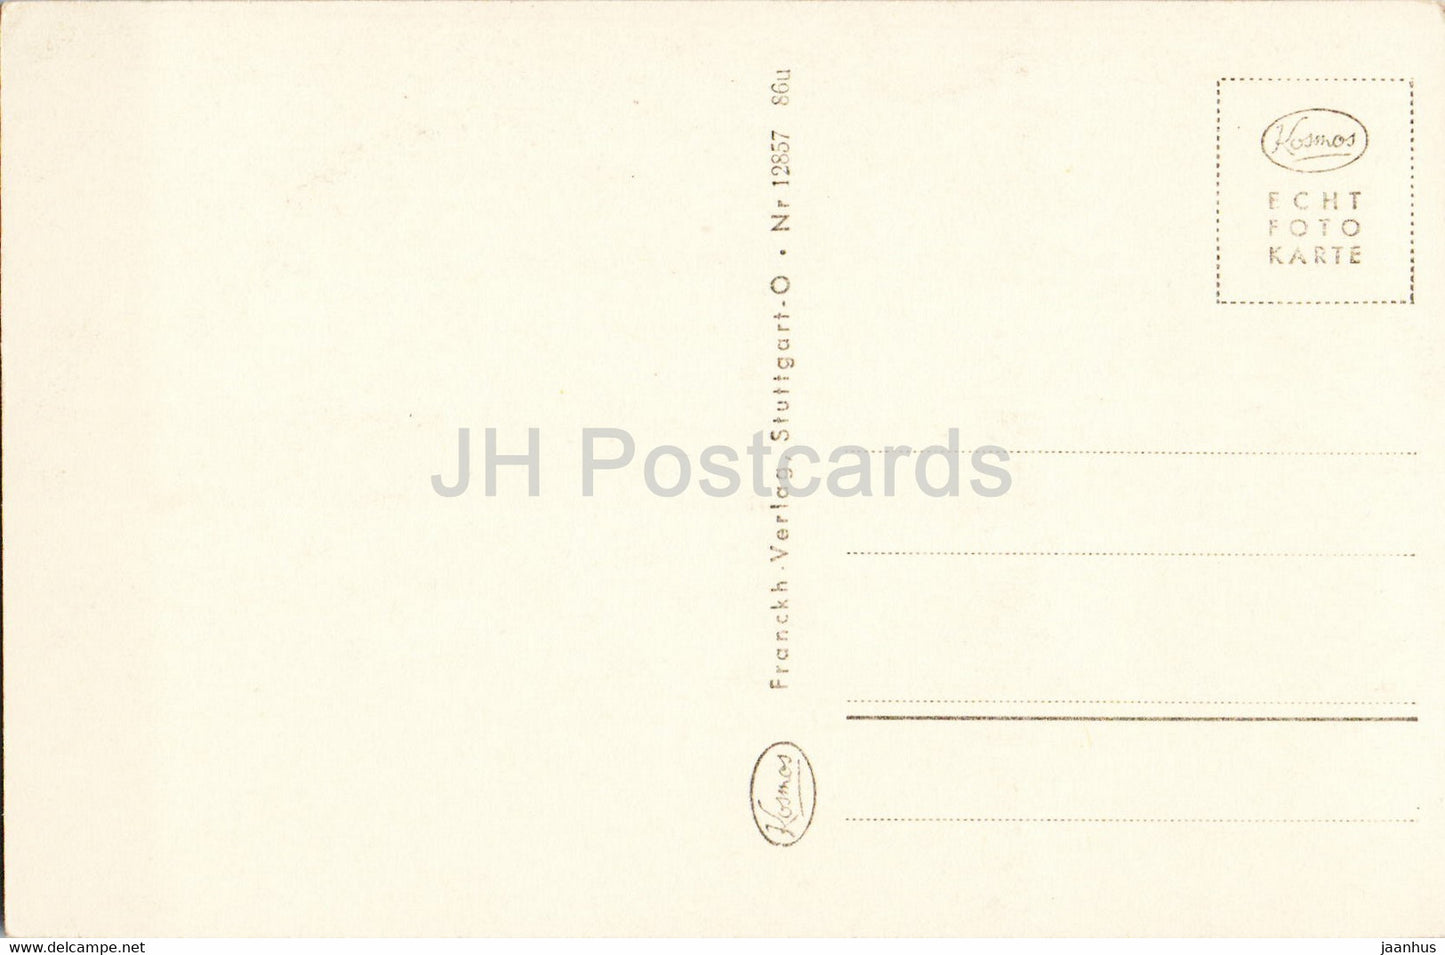 Am Bodensee - 12857 - alte Postkarte - Deutschland - unbenutzt